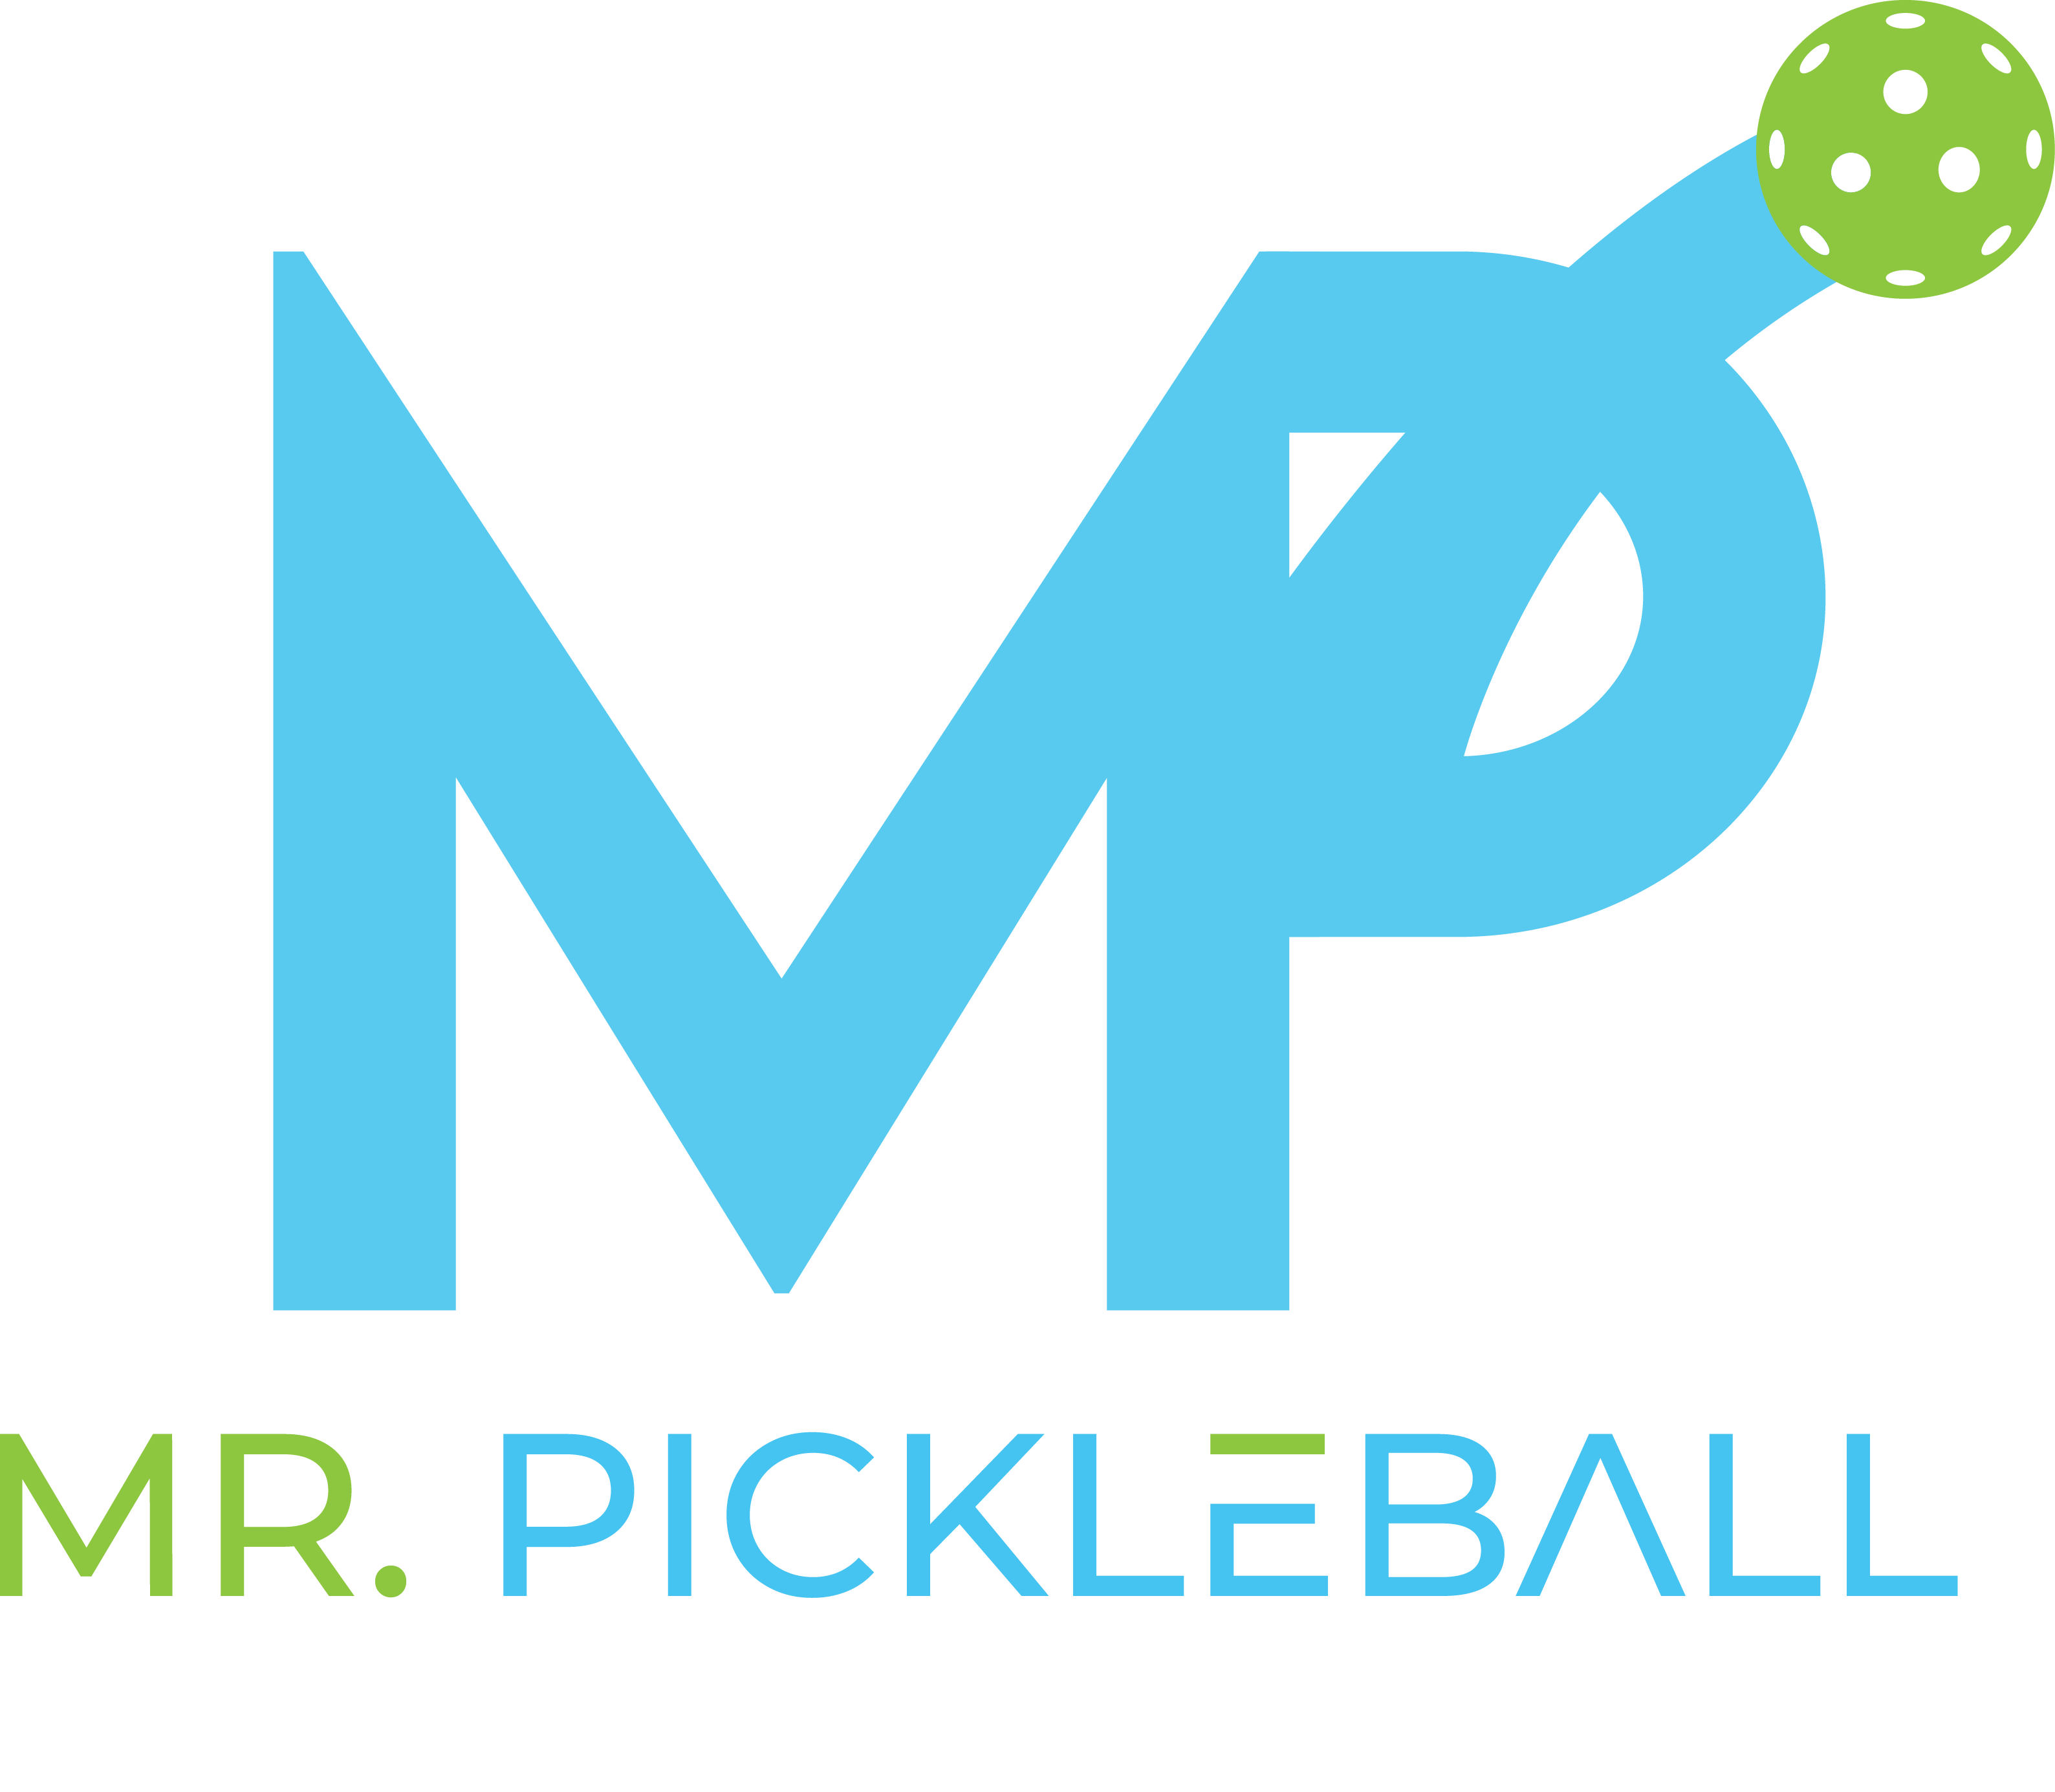 Mr. Pickleball